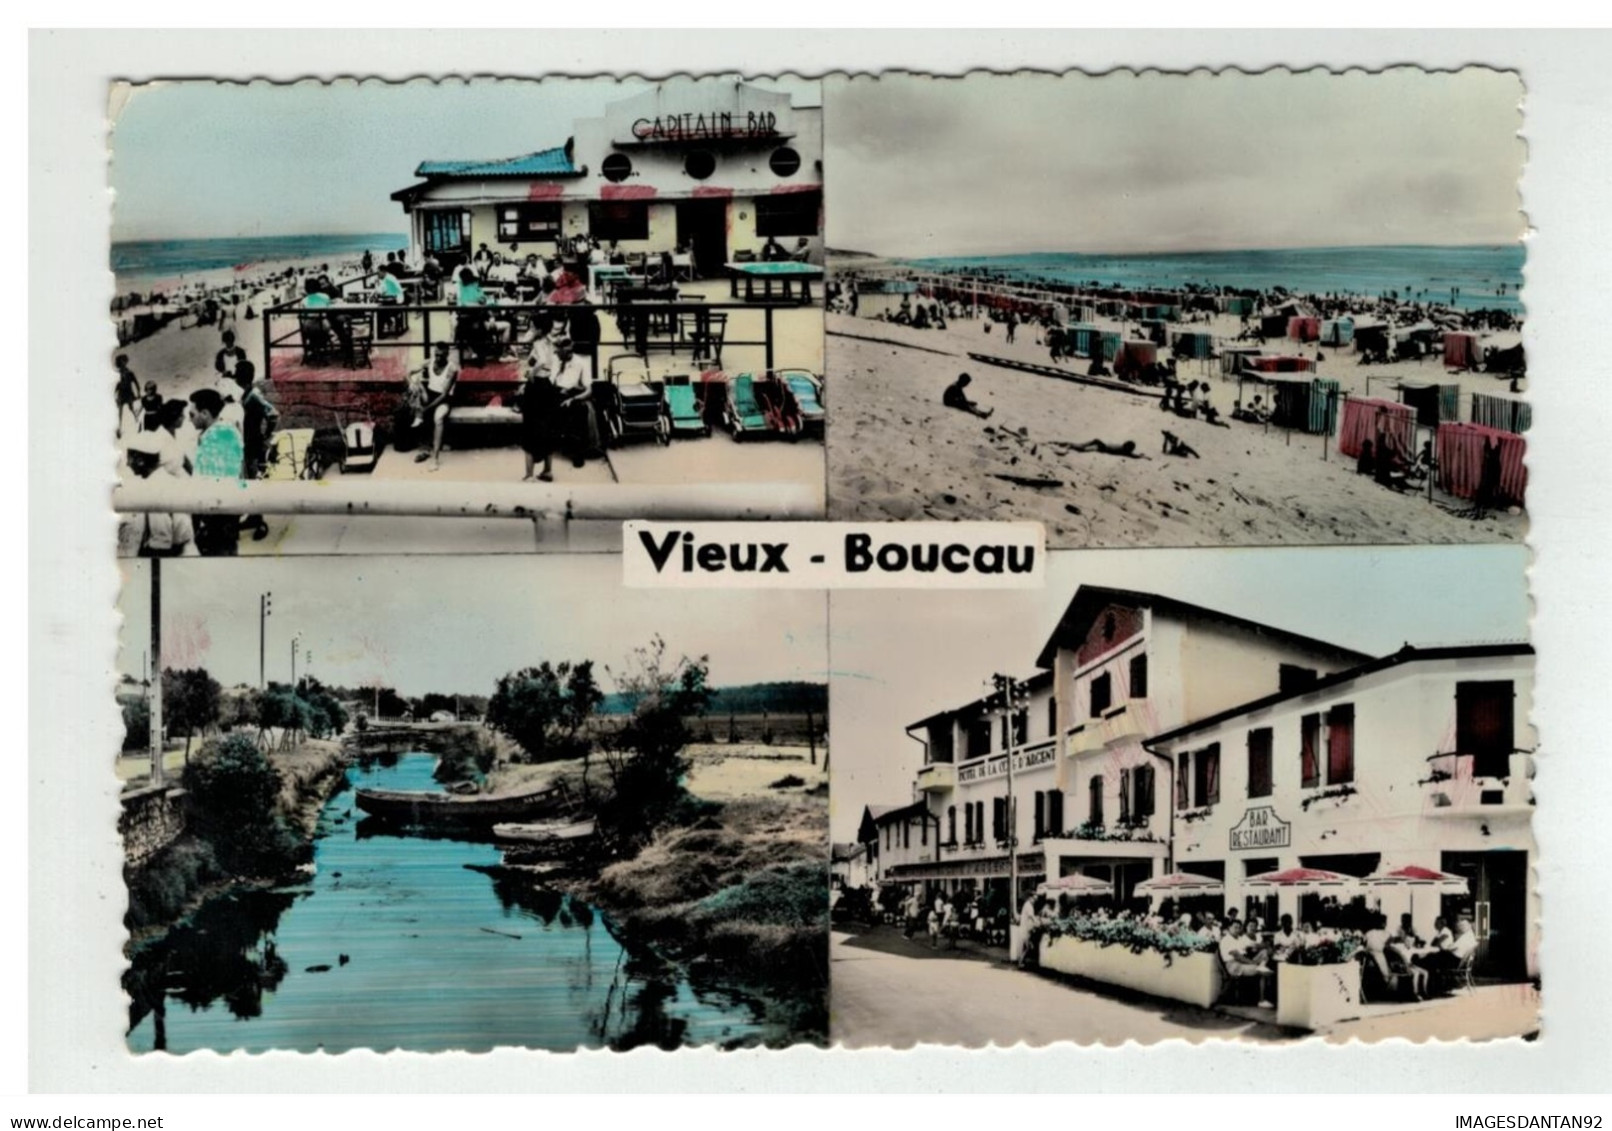 40 VIEUX BOUCAU LES BAINS SOUVENIR VUES MULTIPLES NÂ°475 - Vieux Boucau